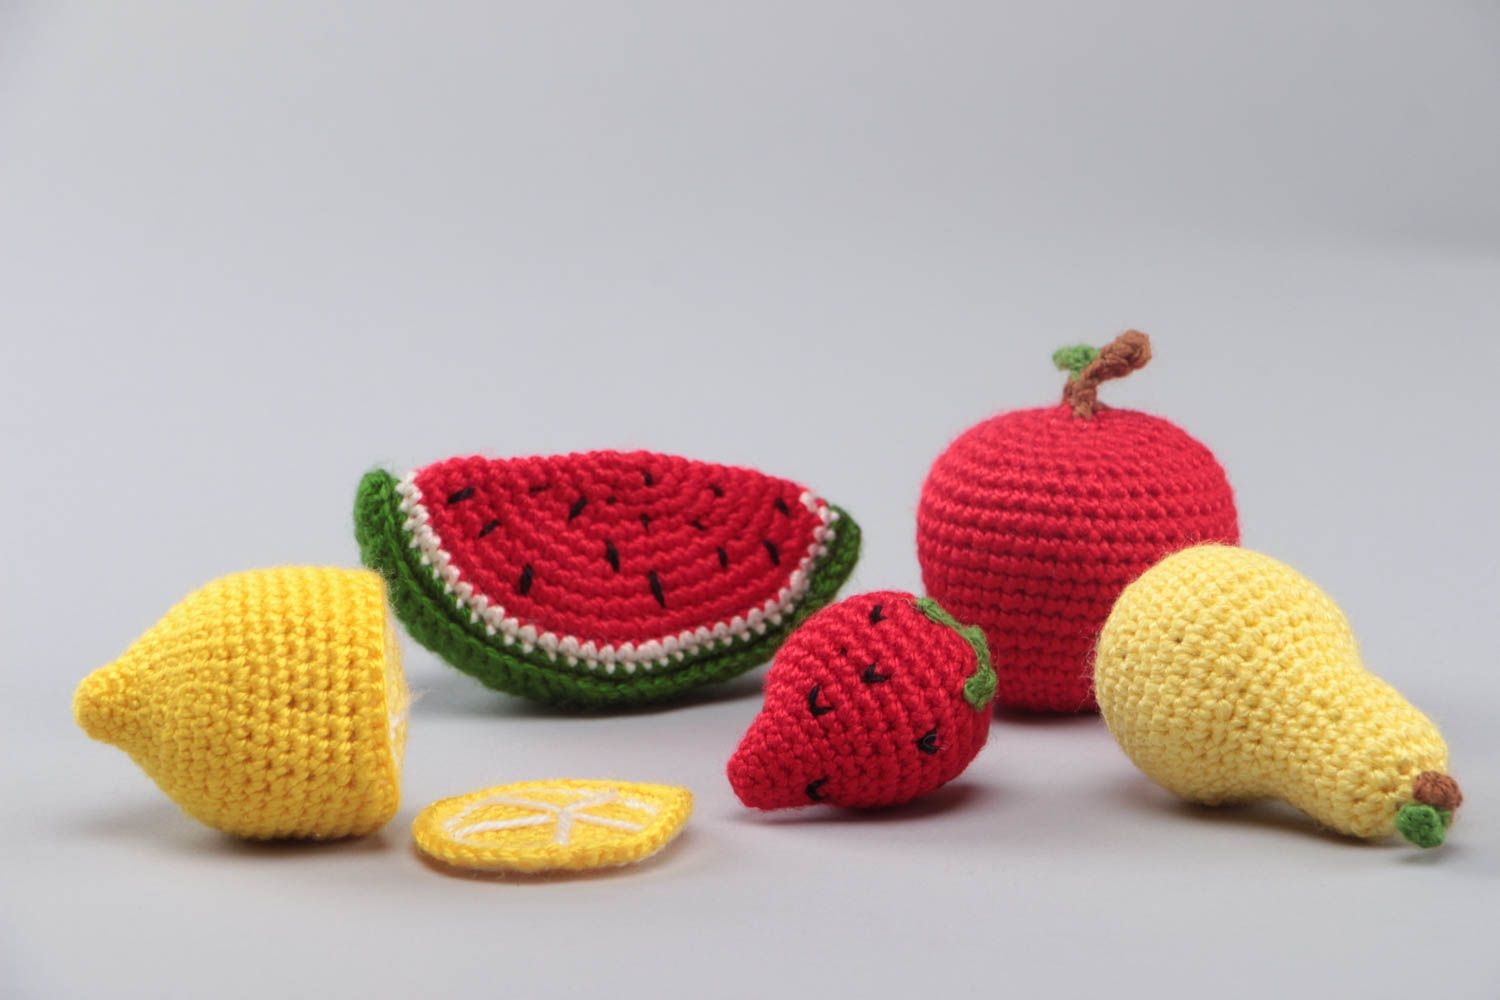 Мягкие вязаные игрушки набор фруктов 6 штук ручной работы для дома и детей фото 3